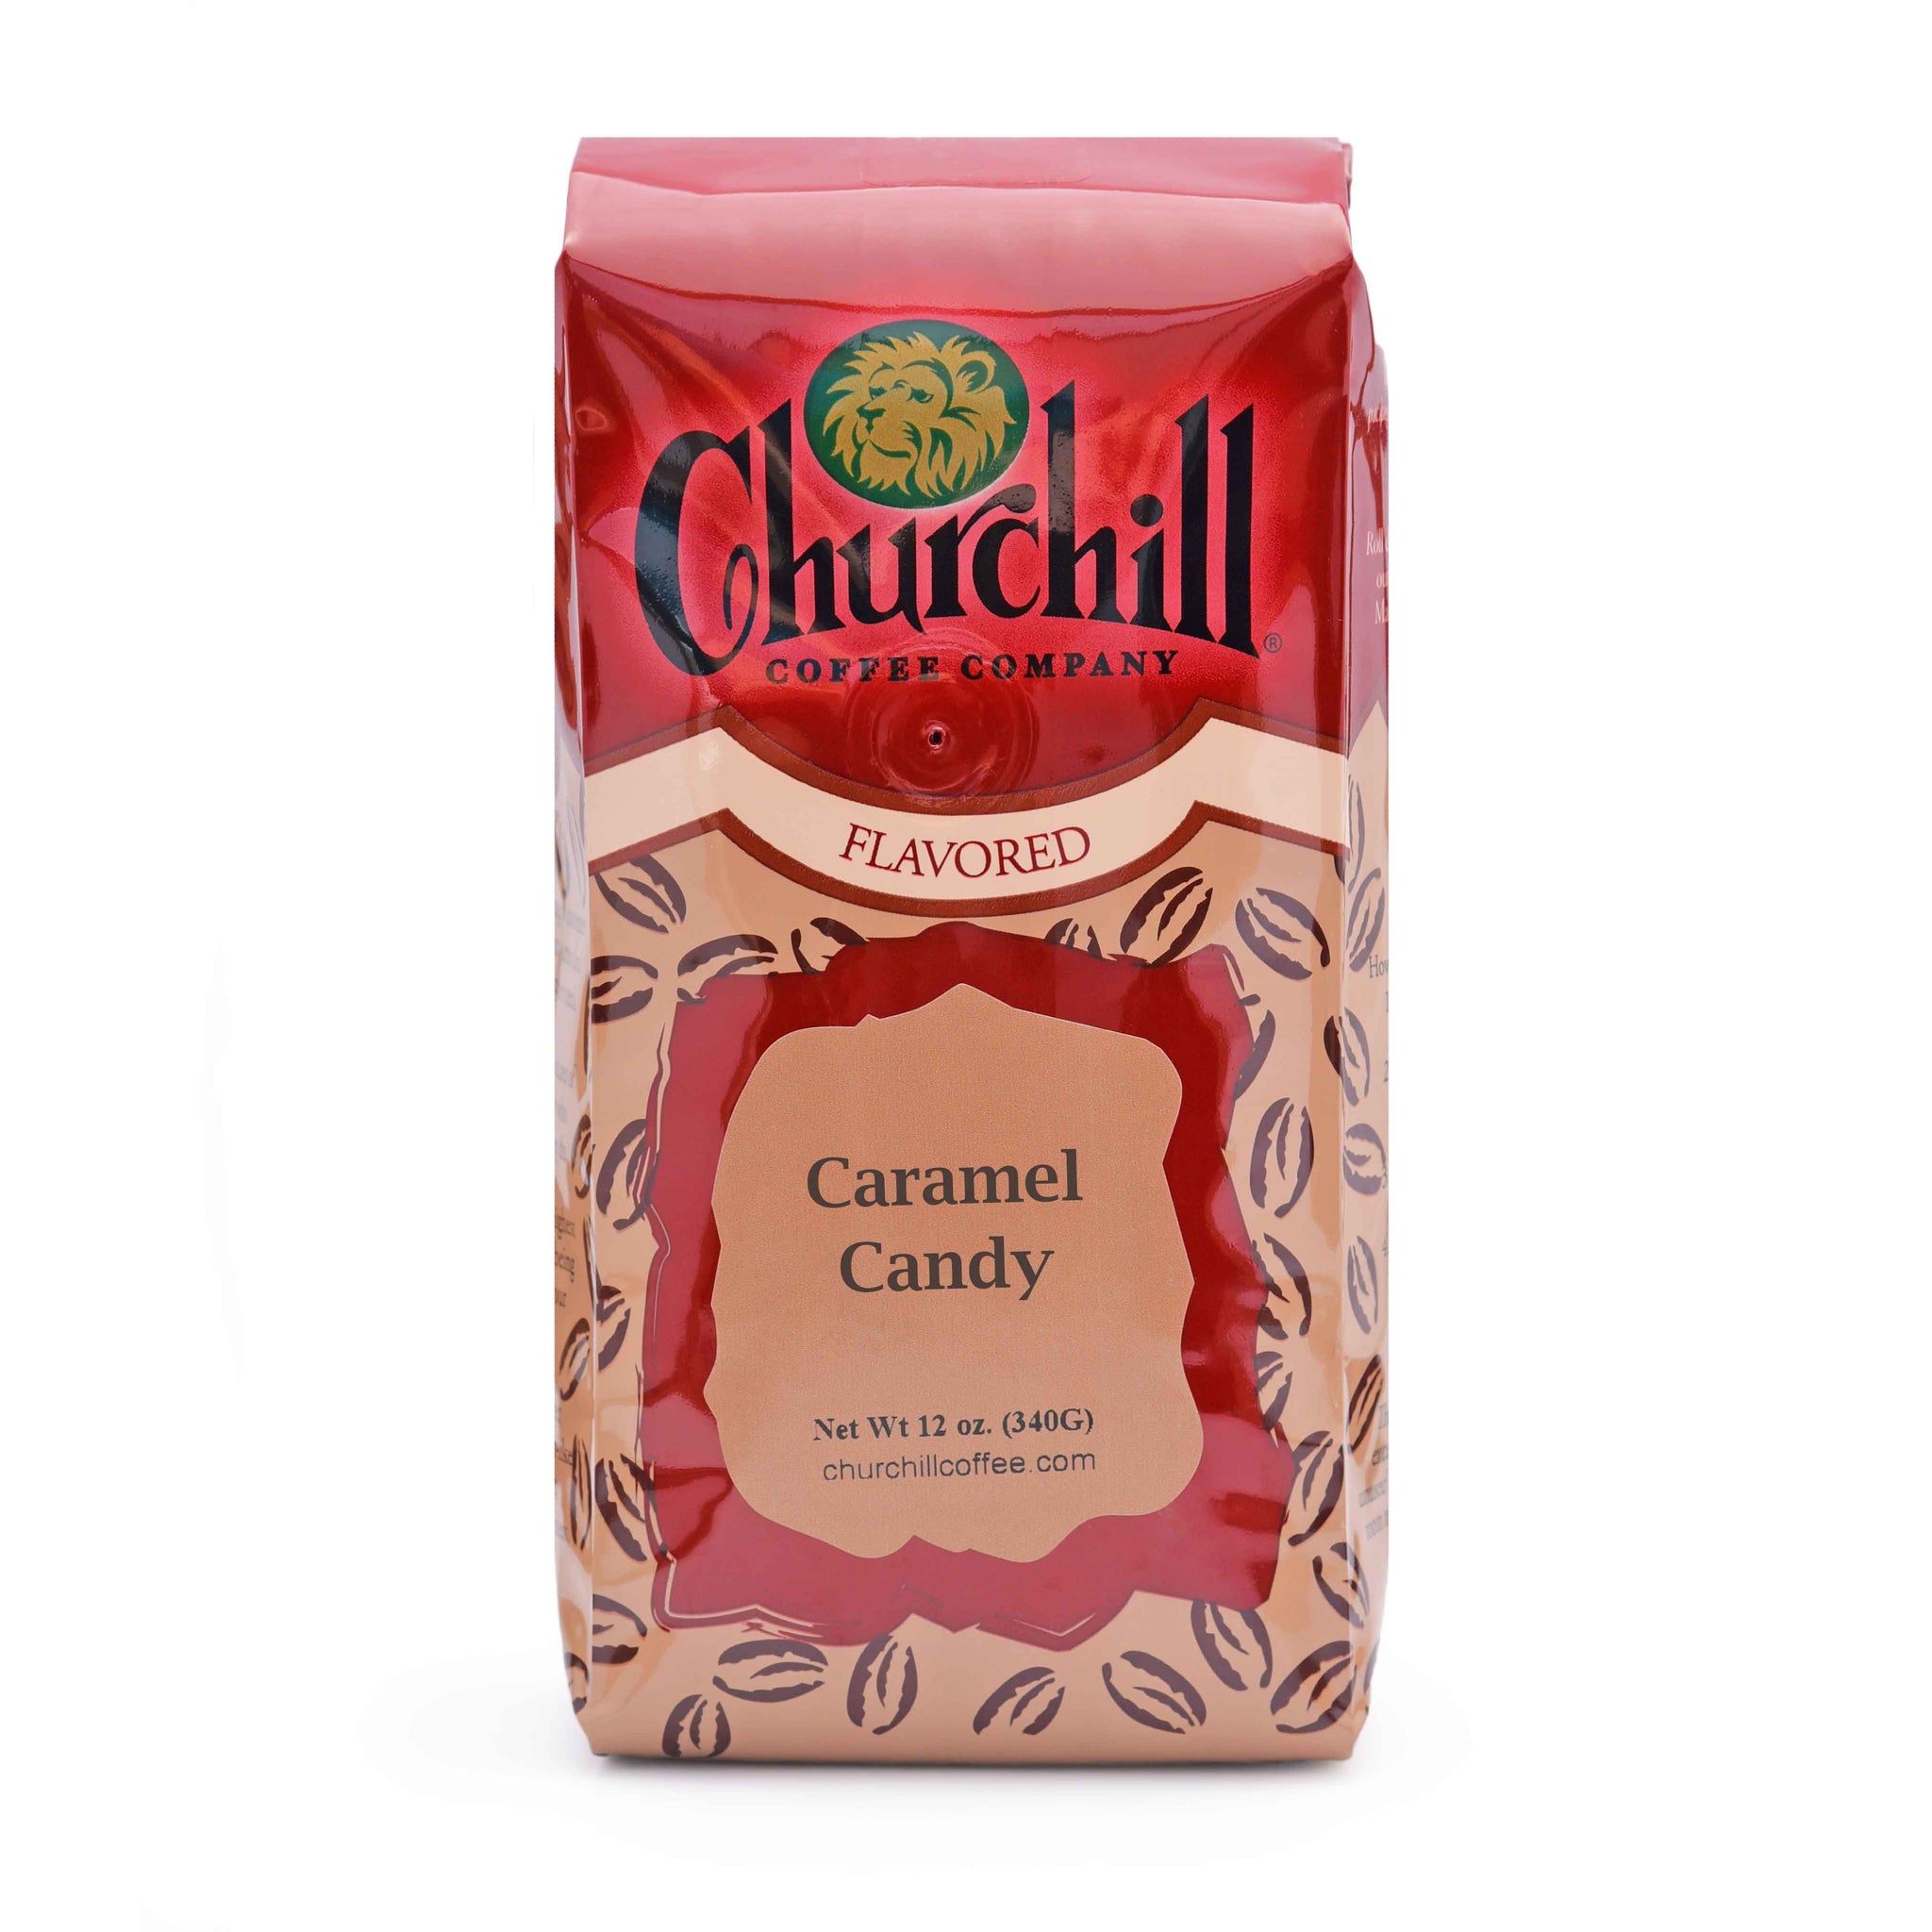 The Caramel Candy Company